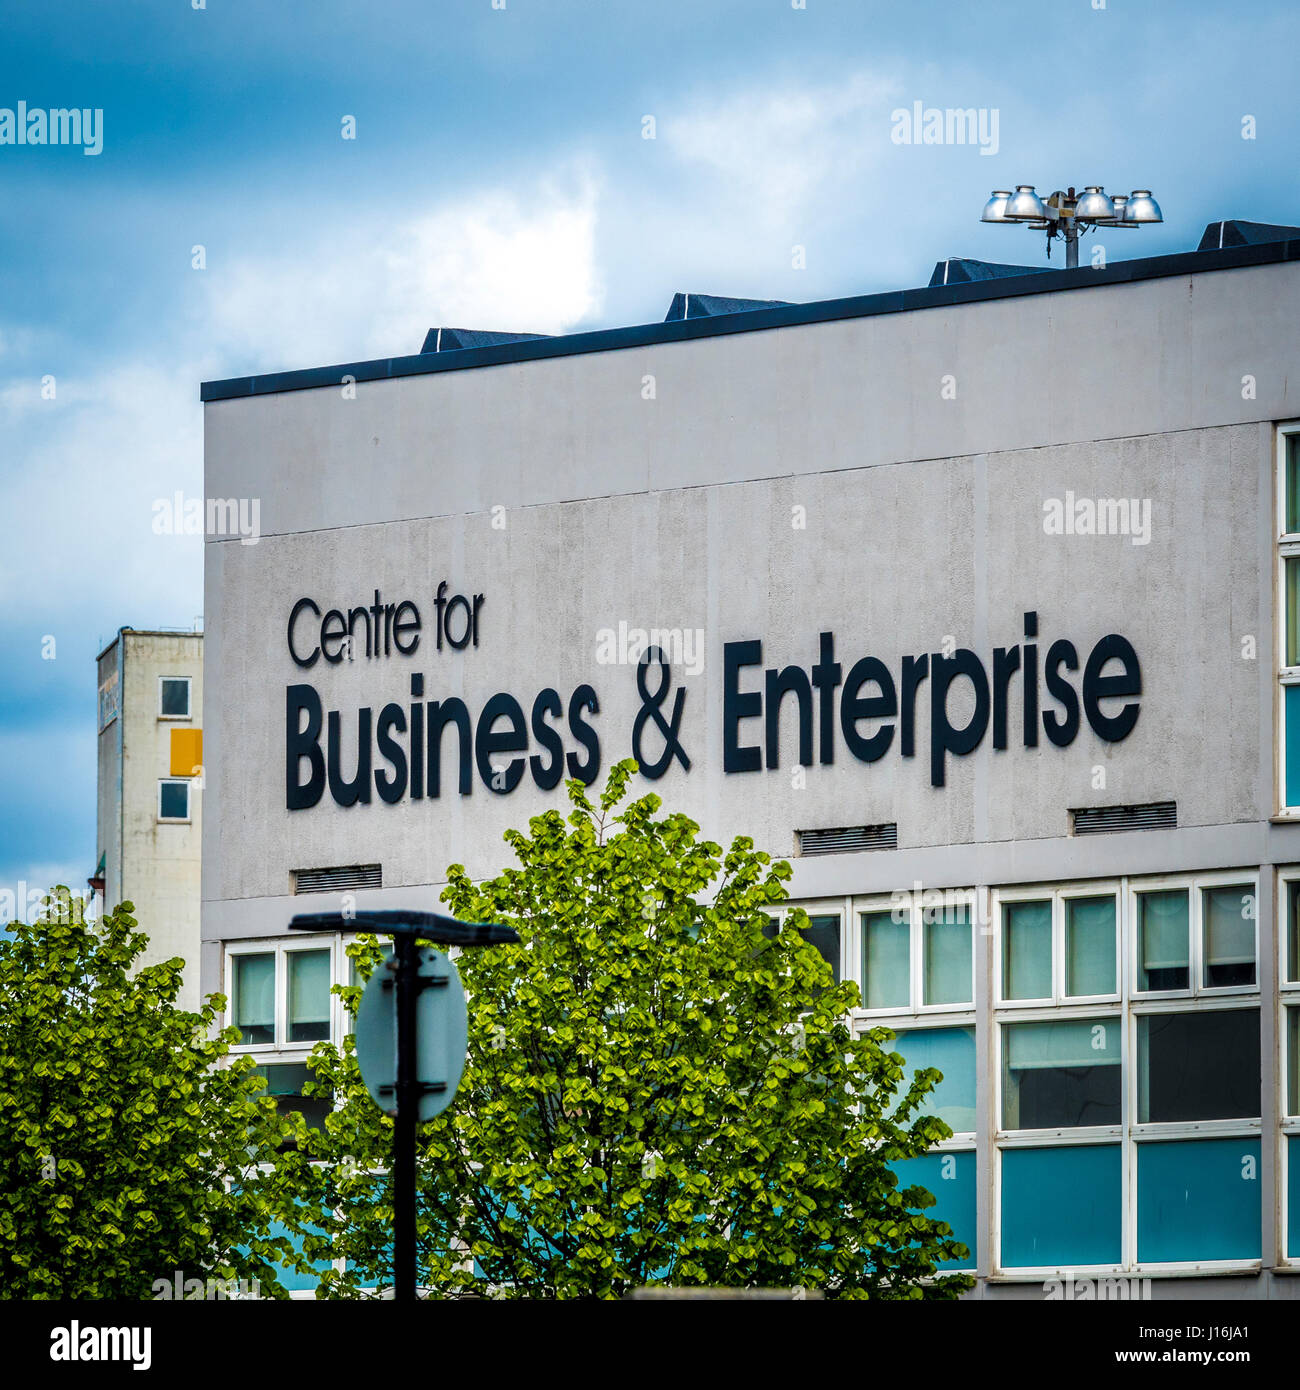 Zentrum für Business und Enterprise Schild am Gebäude, Hull, UK. Stockfoto